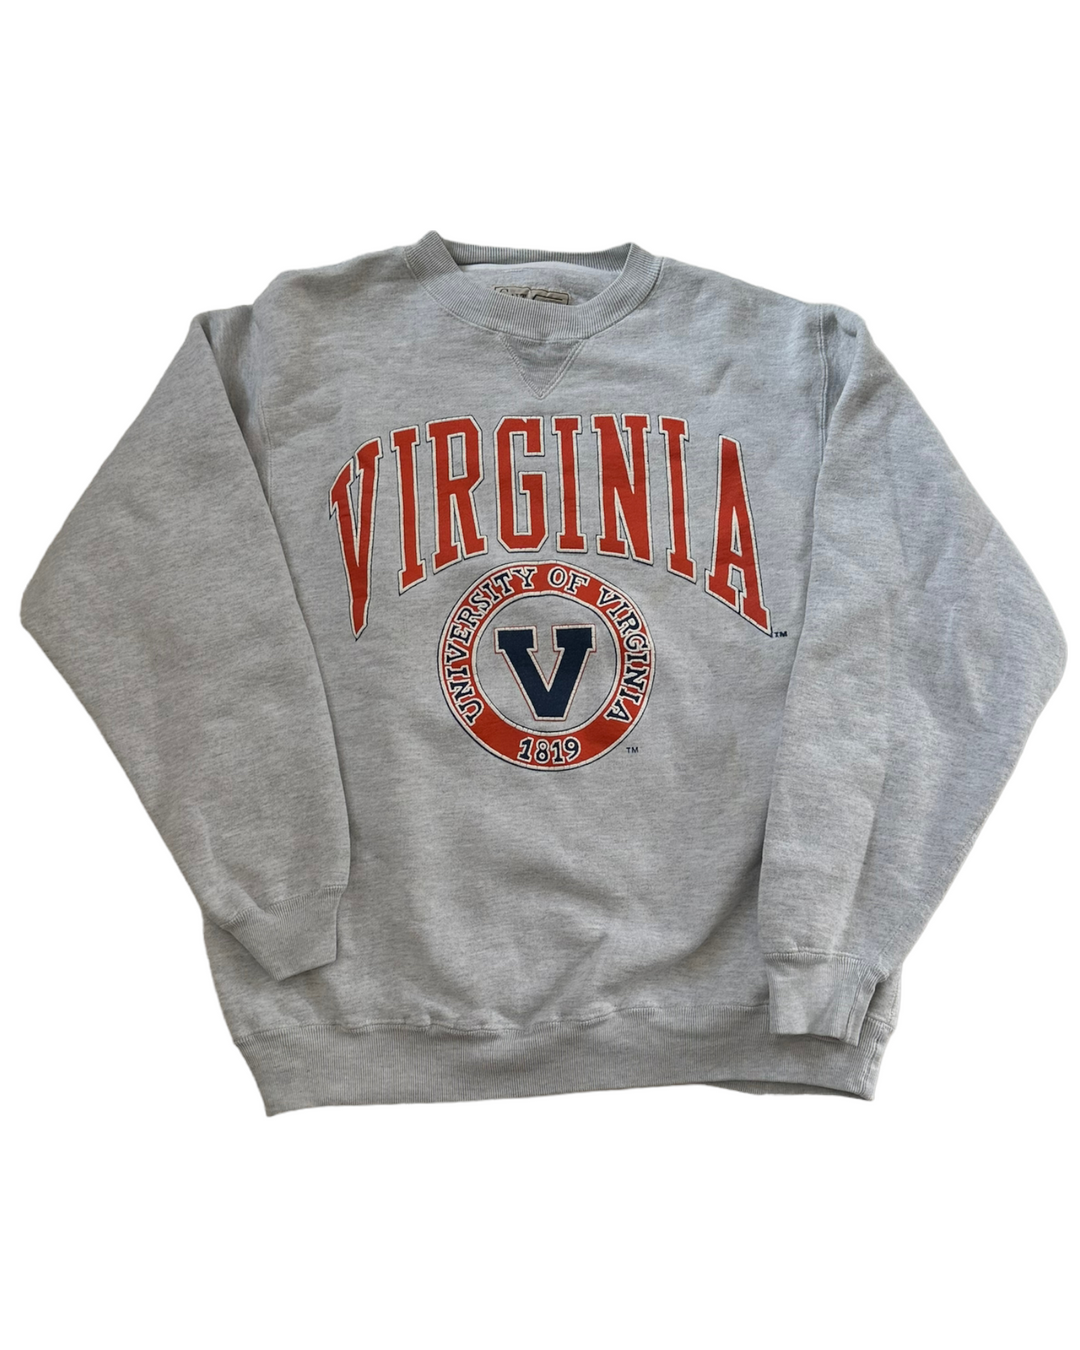 UVA Vintage Rare Sweatshirt